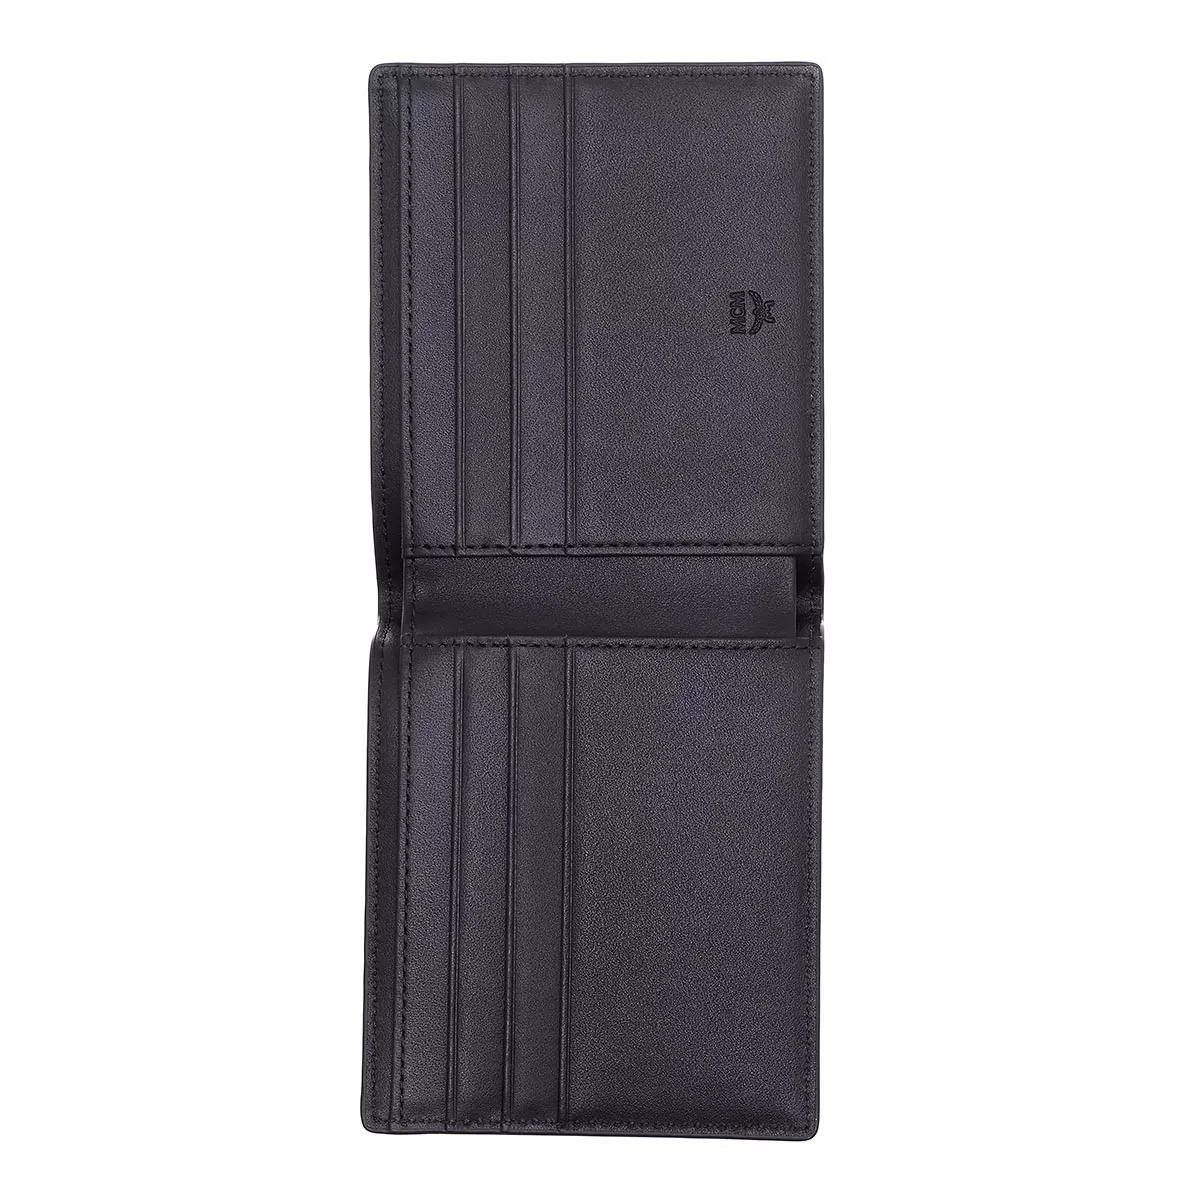 MCM Aren Visetos Original Bifold Portemonnaie Black Wallet Bi-Fold 